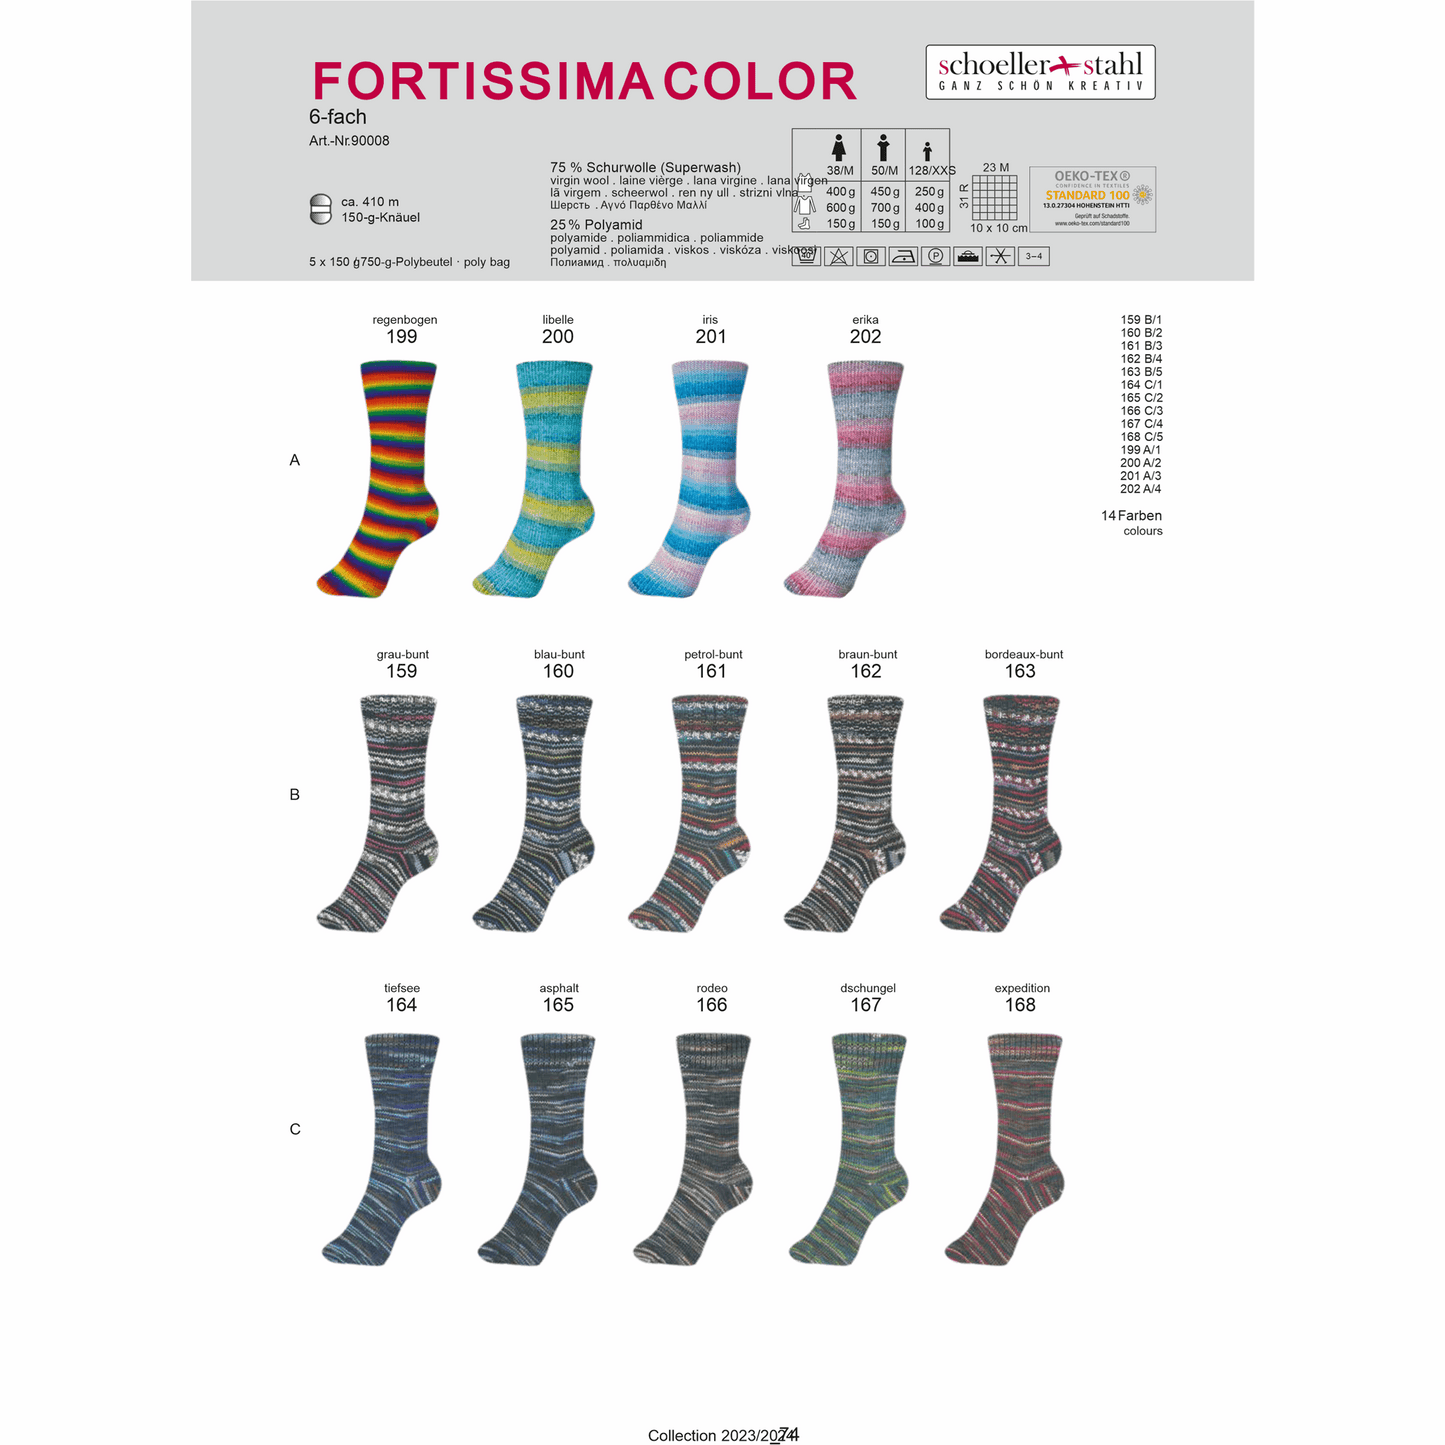 Fortissima 6-thread 150g color, 90008, color 165, asphalt